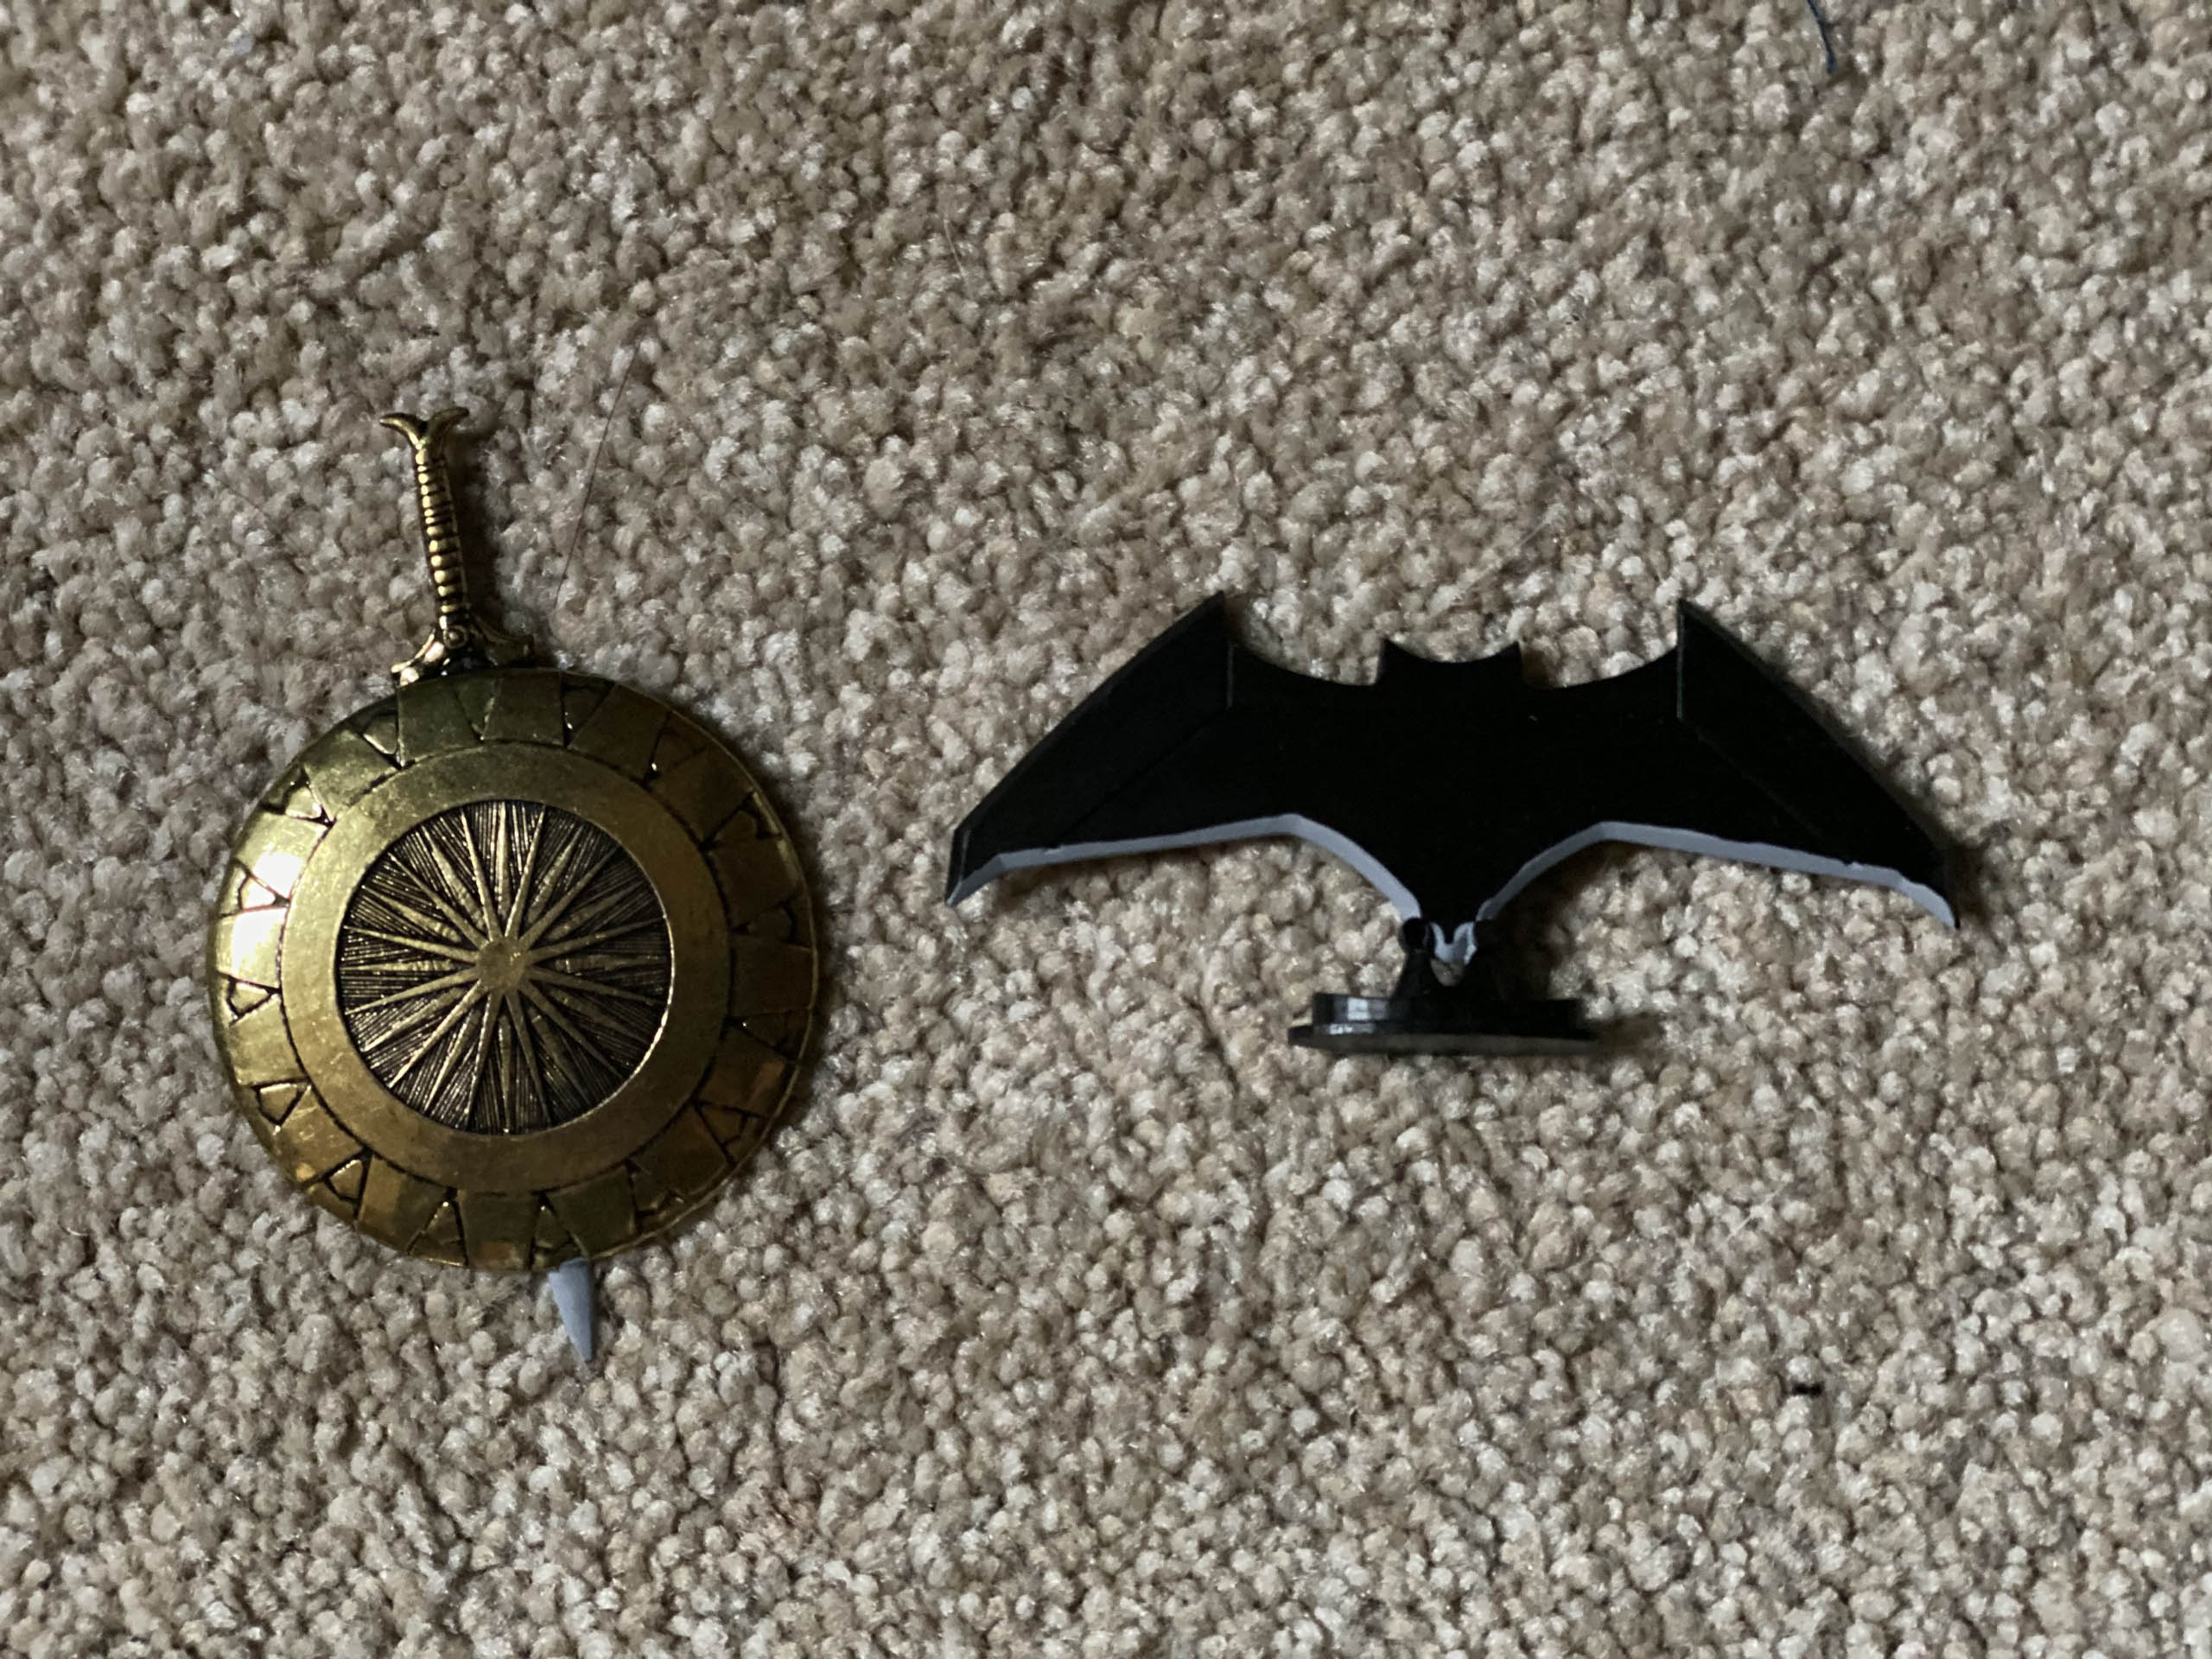 DC Kuzos - Batarang and Wonder Woman Sword and Shield Steel Collectible